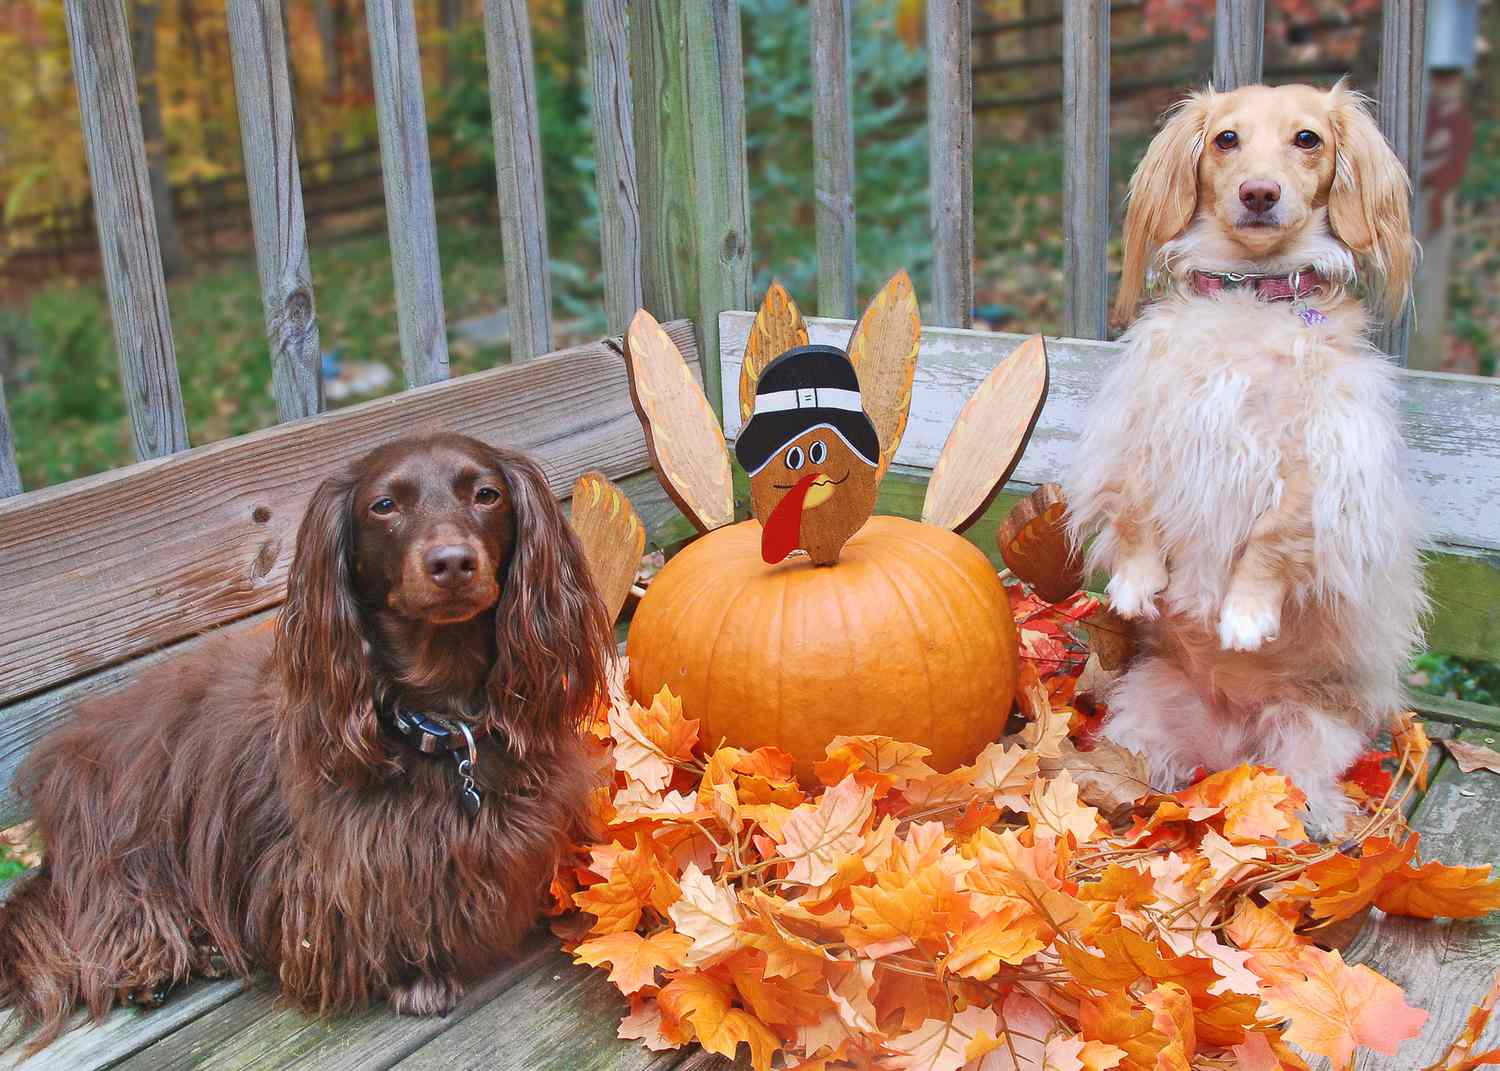 Uma abóbora peru servindo como decoração de Ação de Graças ao ar livre, ladeada por dois cães.